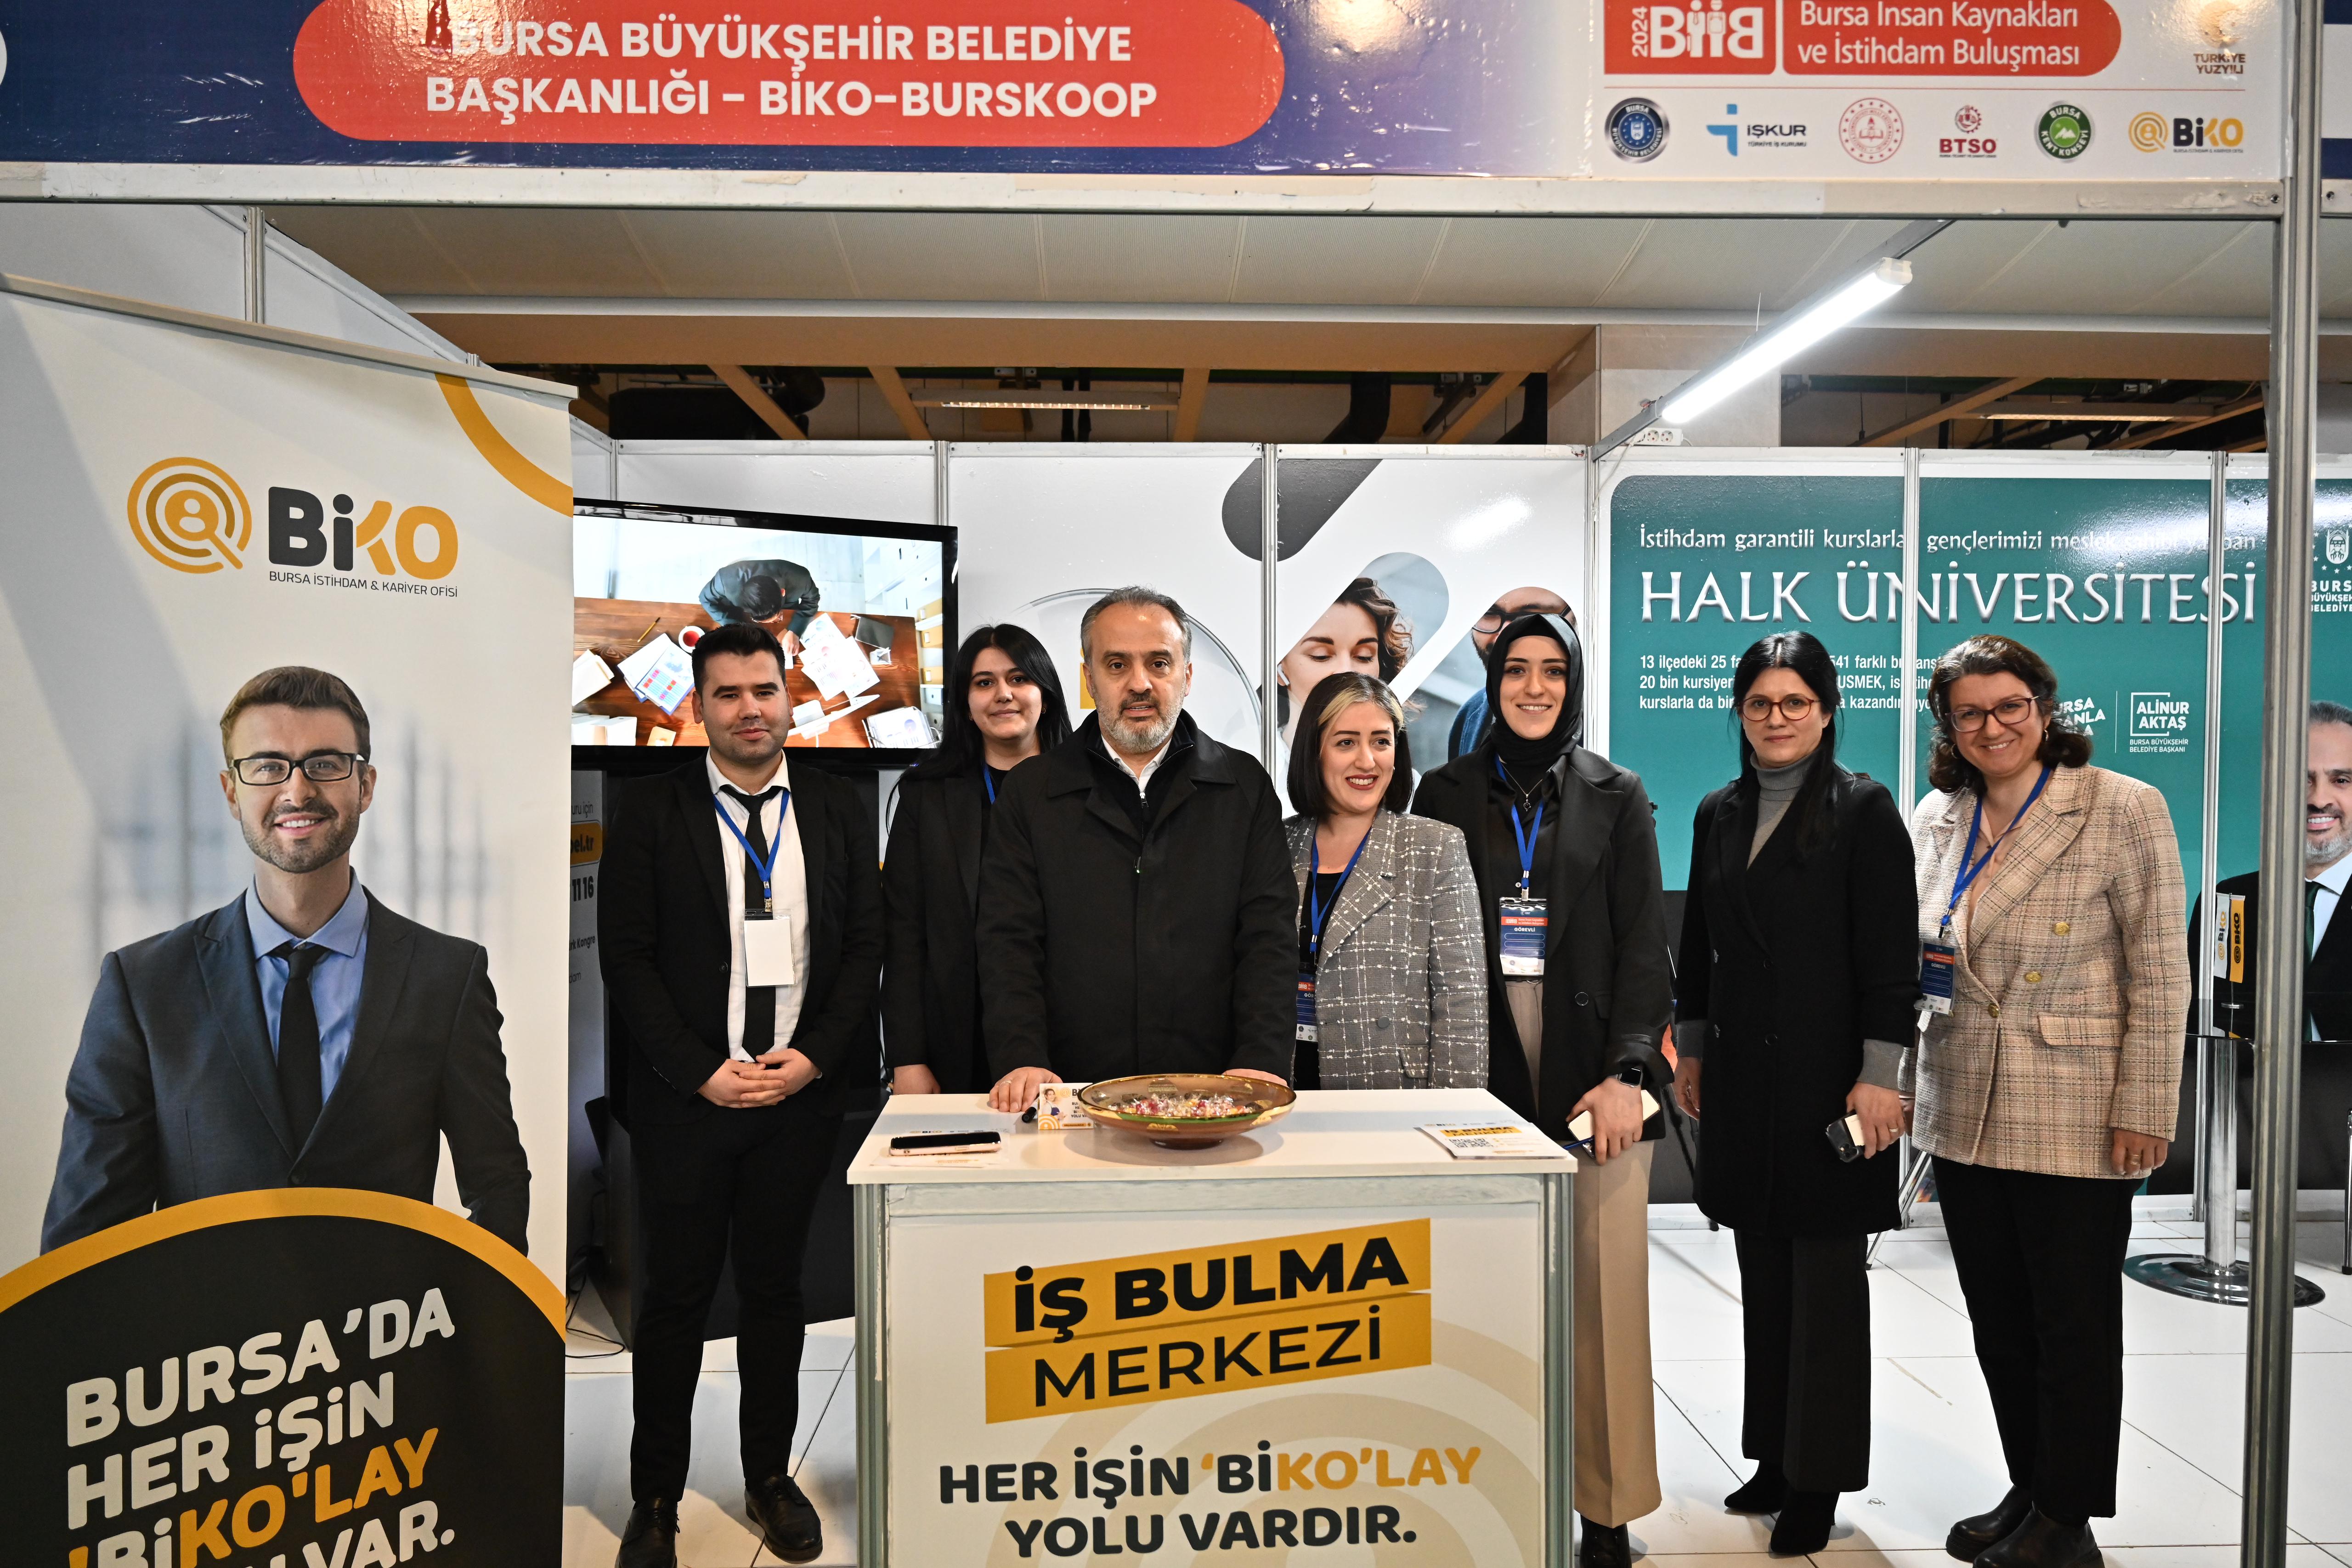 Bursa’da “İnsan Kaynakları ve İstihdam Buluşması” gerçekleştirildi